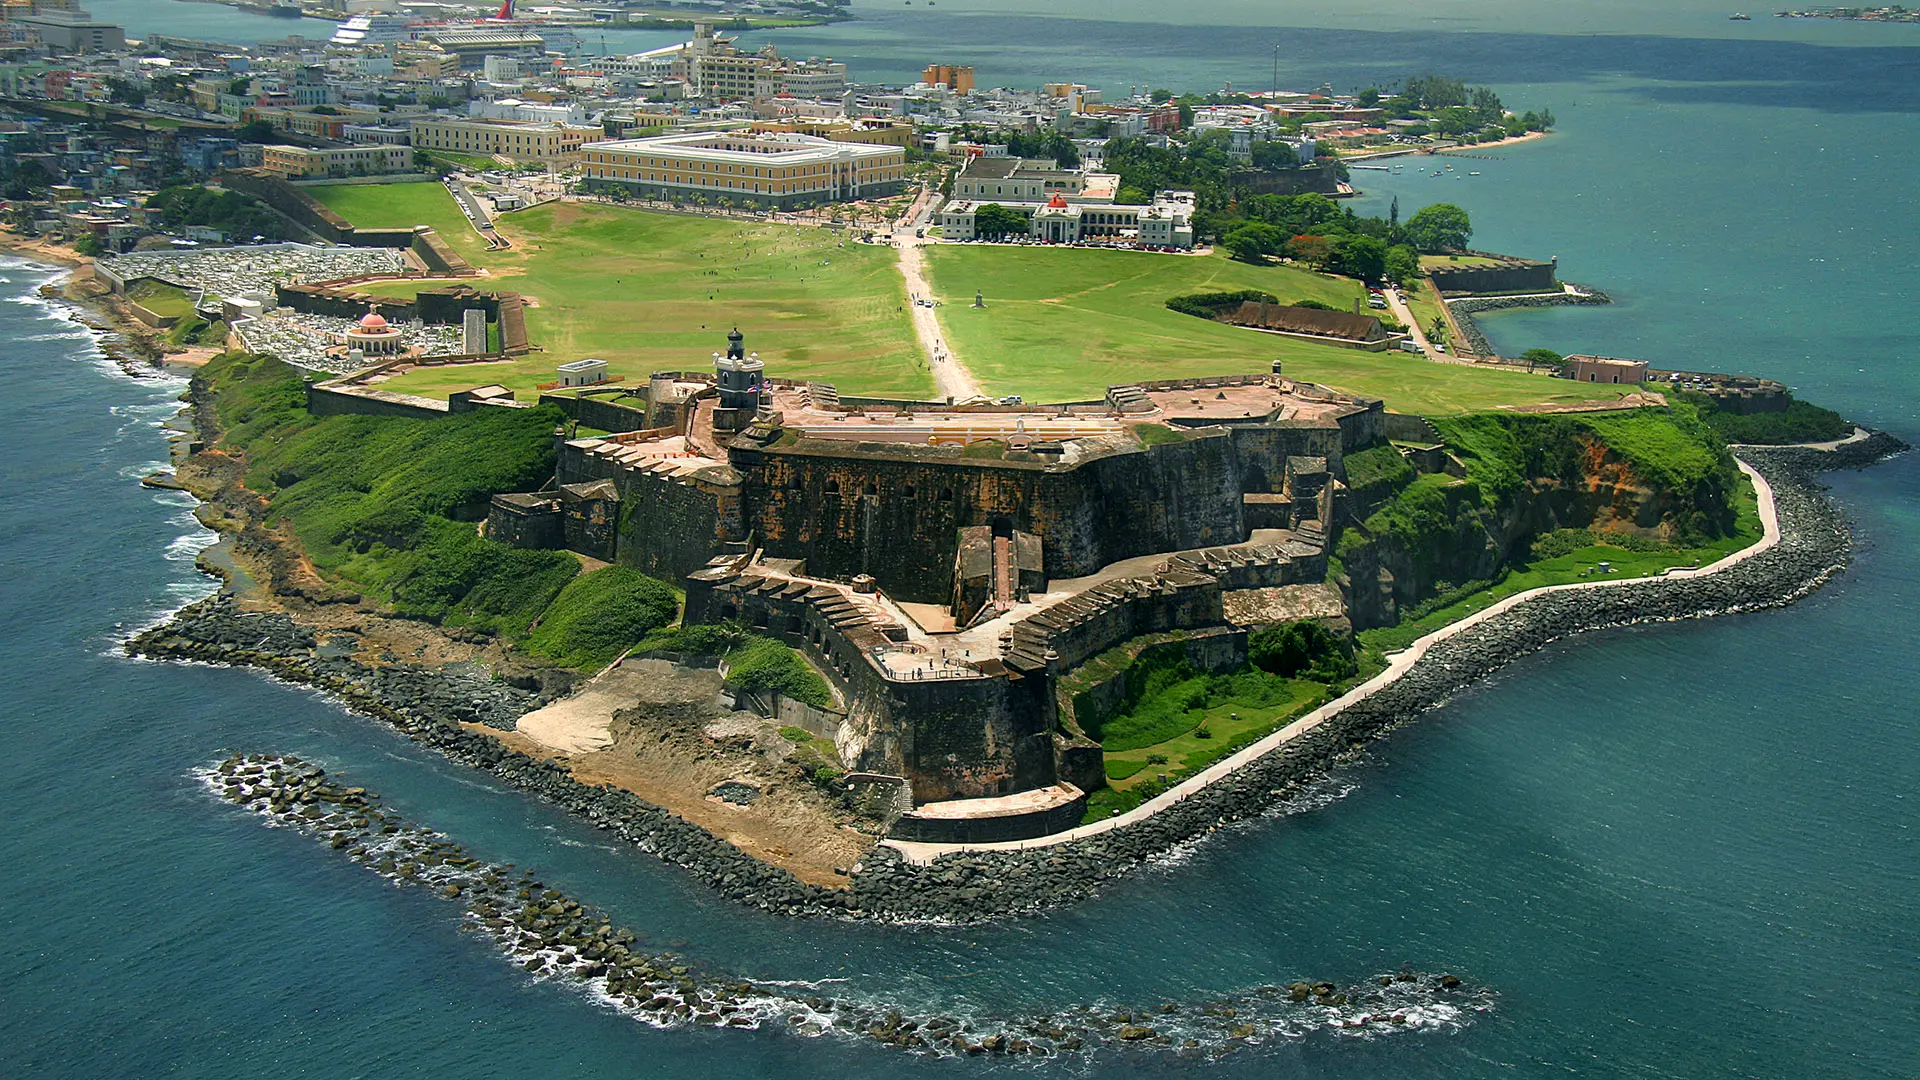 Ocho razones para elegir viajar a Puerto Rico en 2022